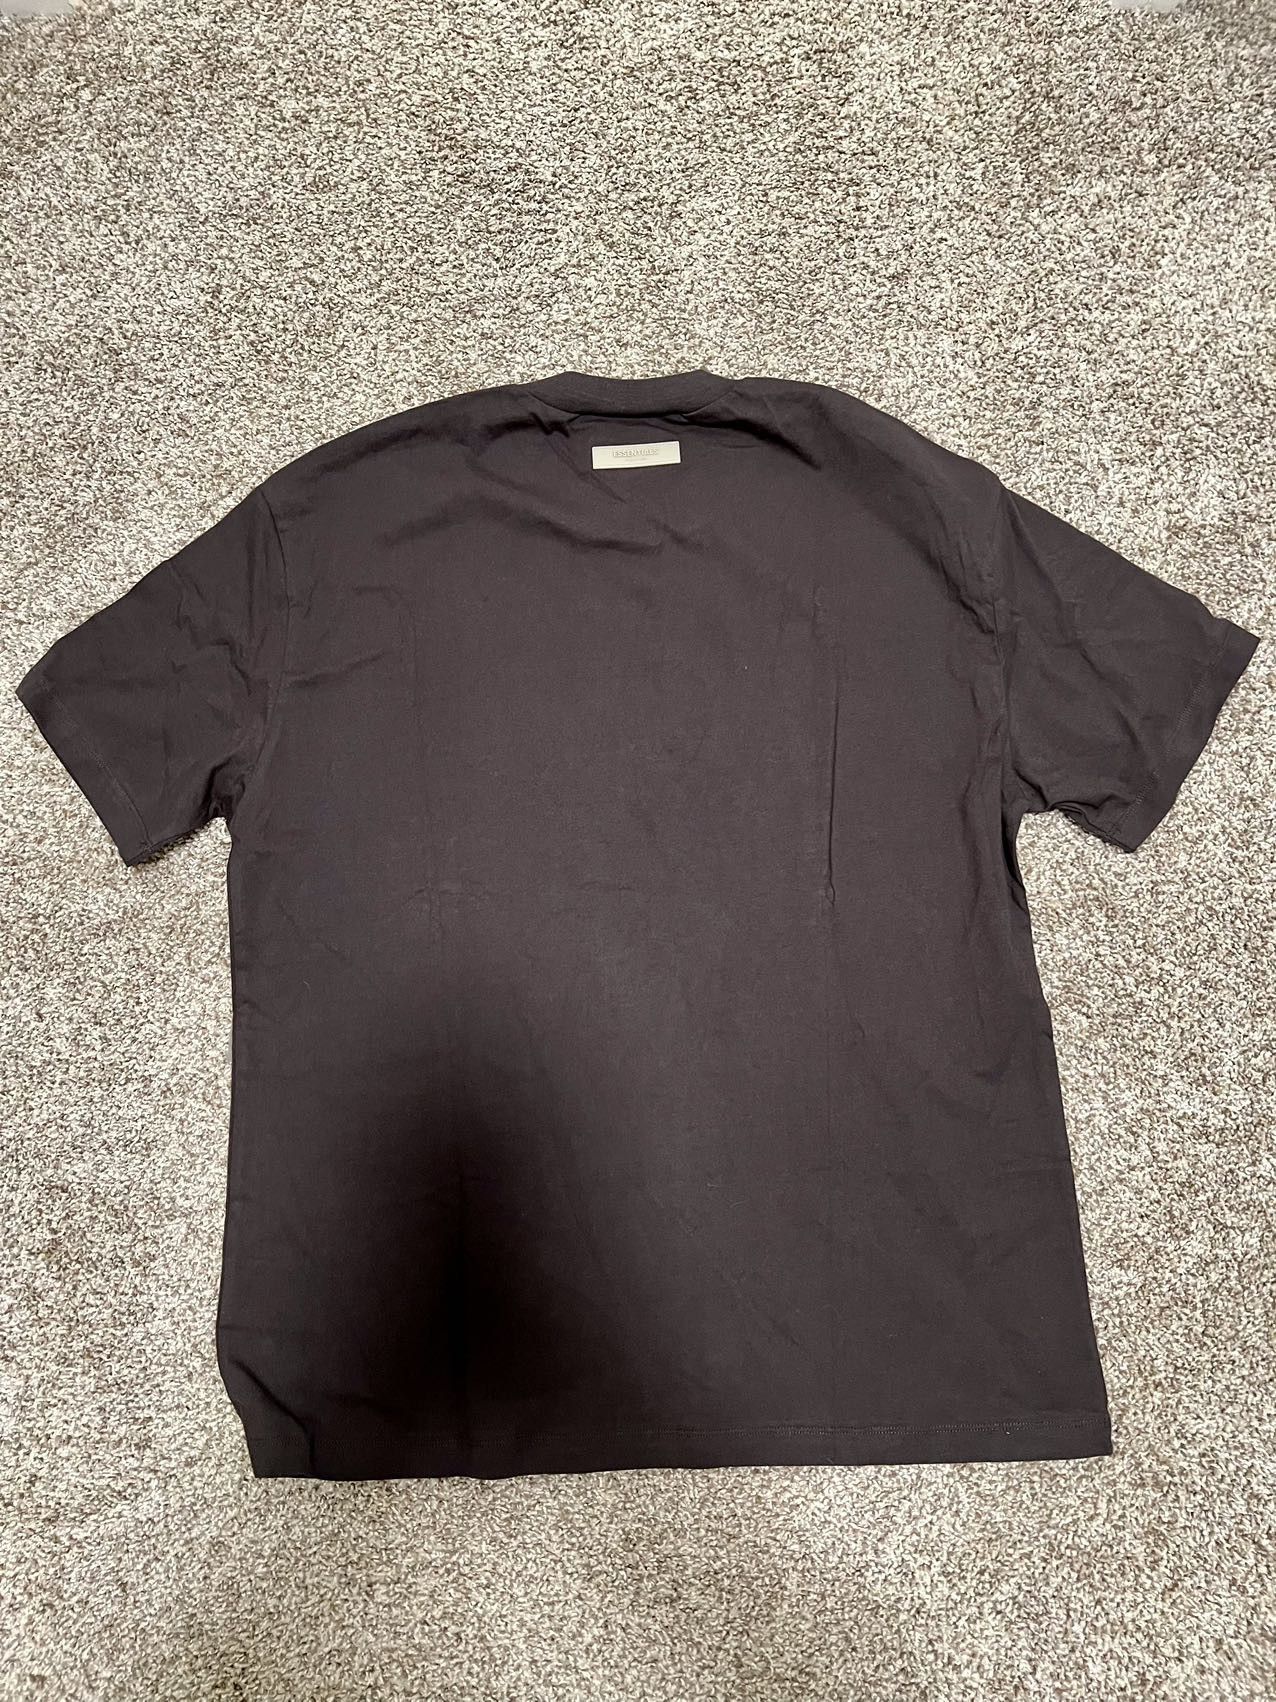 Essentials 1977 Black Iron T-shirt L - 2